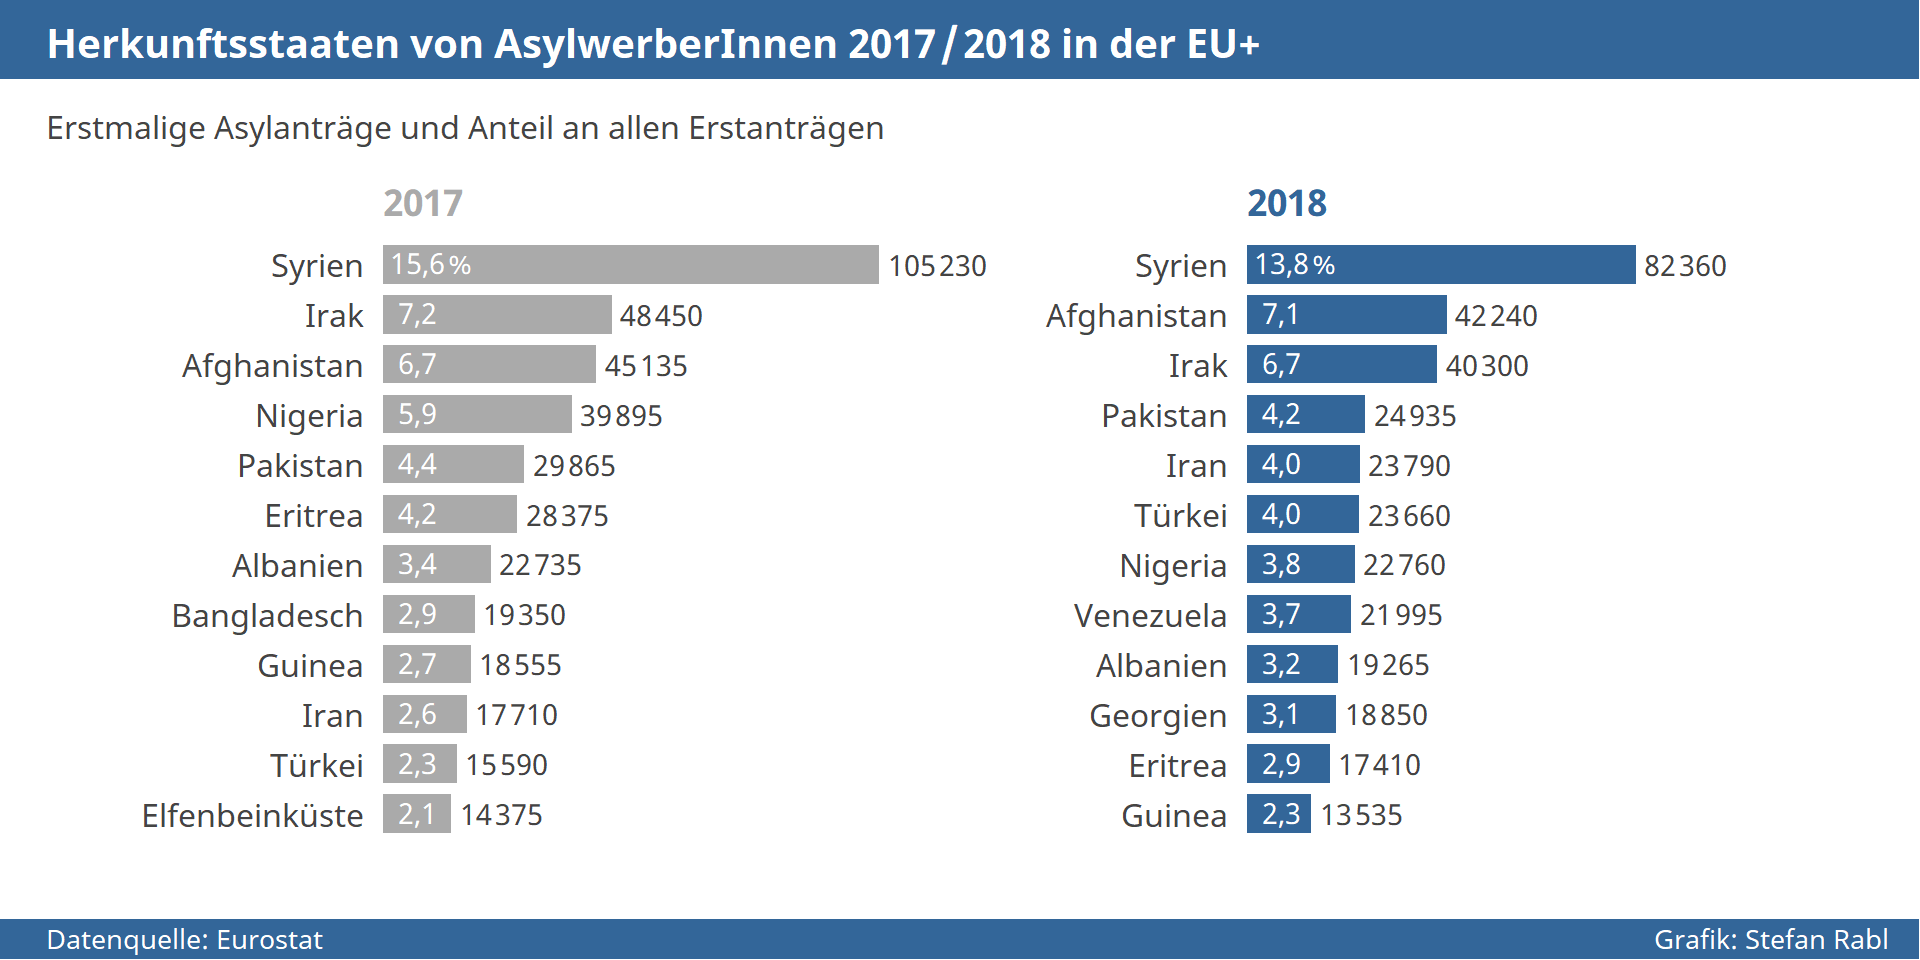 Grafik: Vergleich Herkunftsstaaten von AsylwerberInnen in der EU 2017-2018